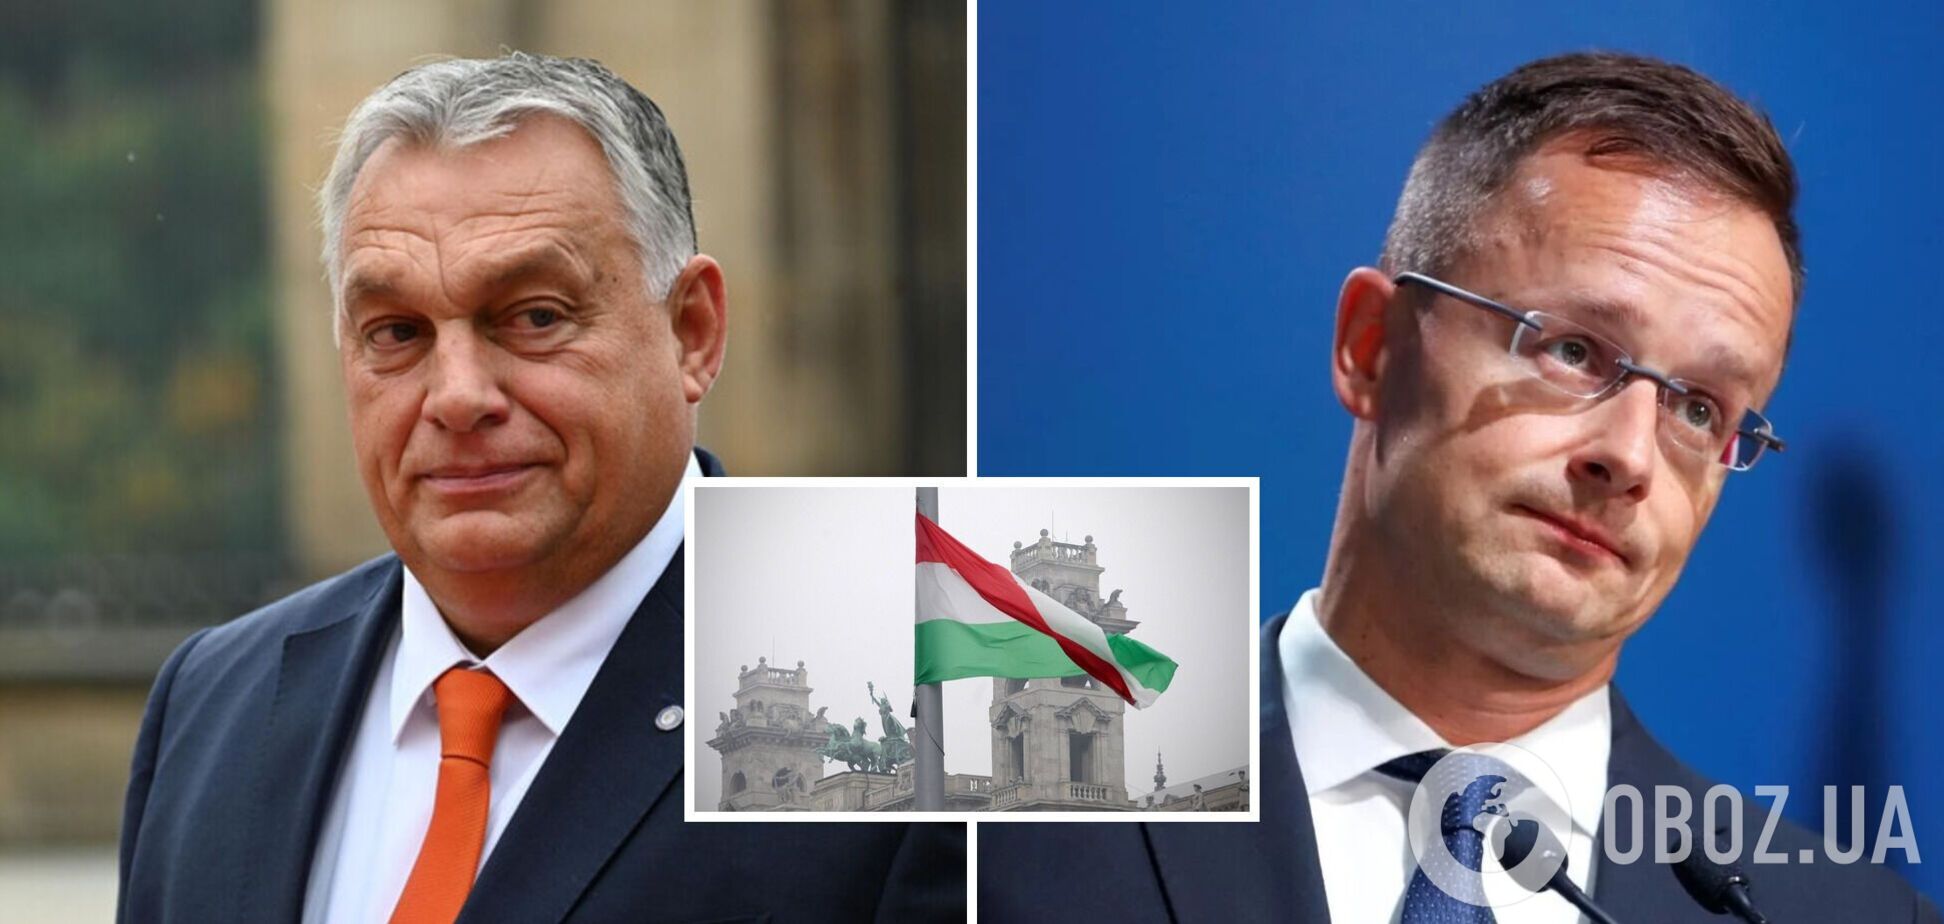 Сіярто визнав, що Будапешт шантажує Київ правами угорців на Закарпатті: подробиці